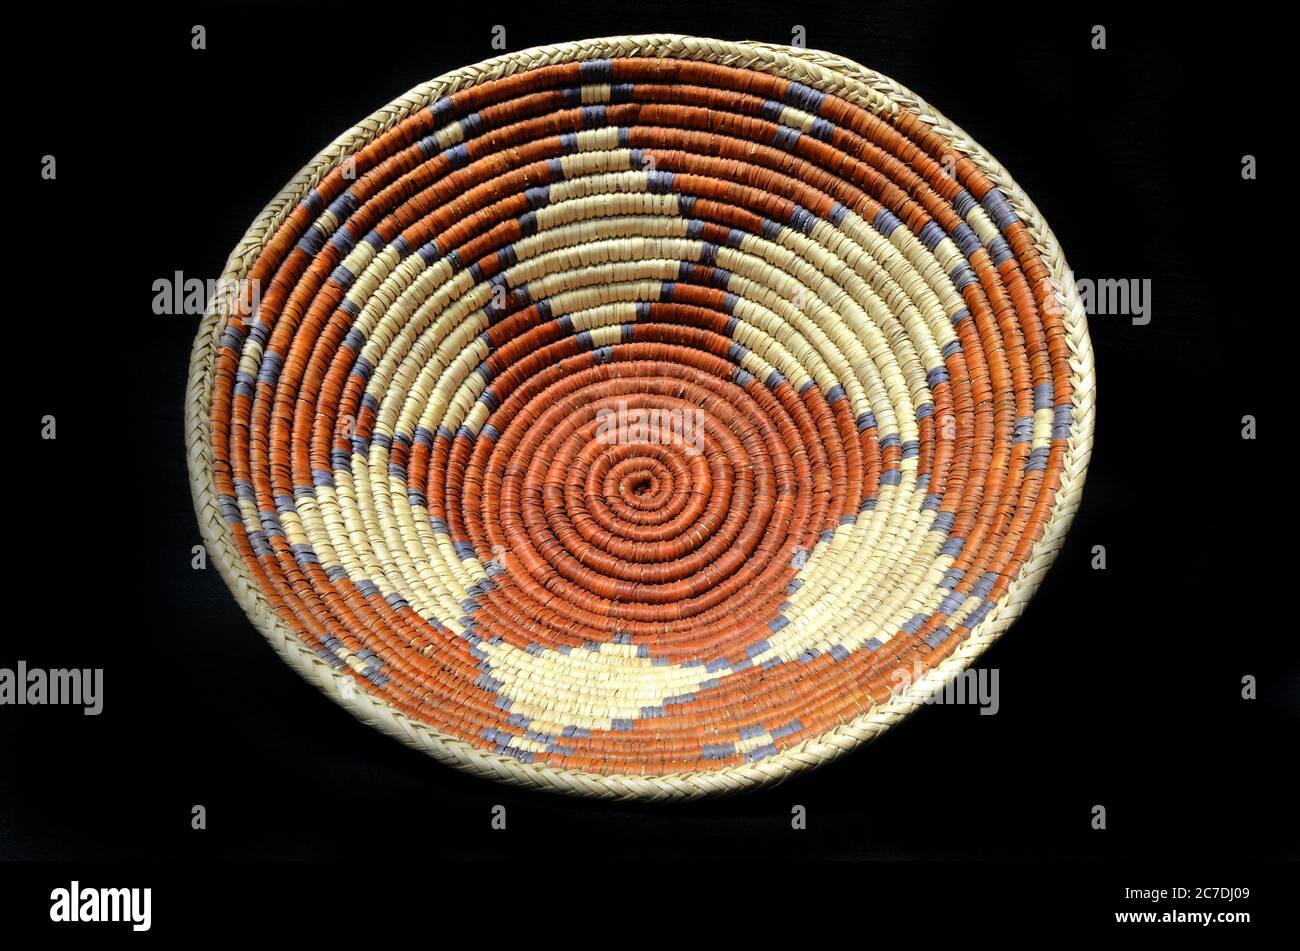 Indianischer Korb mit Rost- und Tan-Farben und einem Sternmuster  Stockfotografie - Alamy